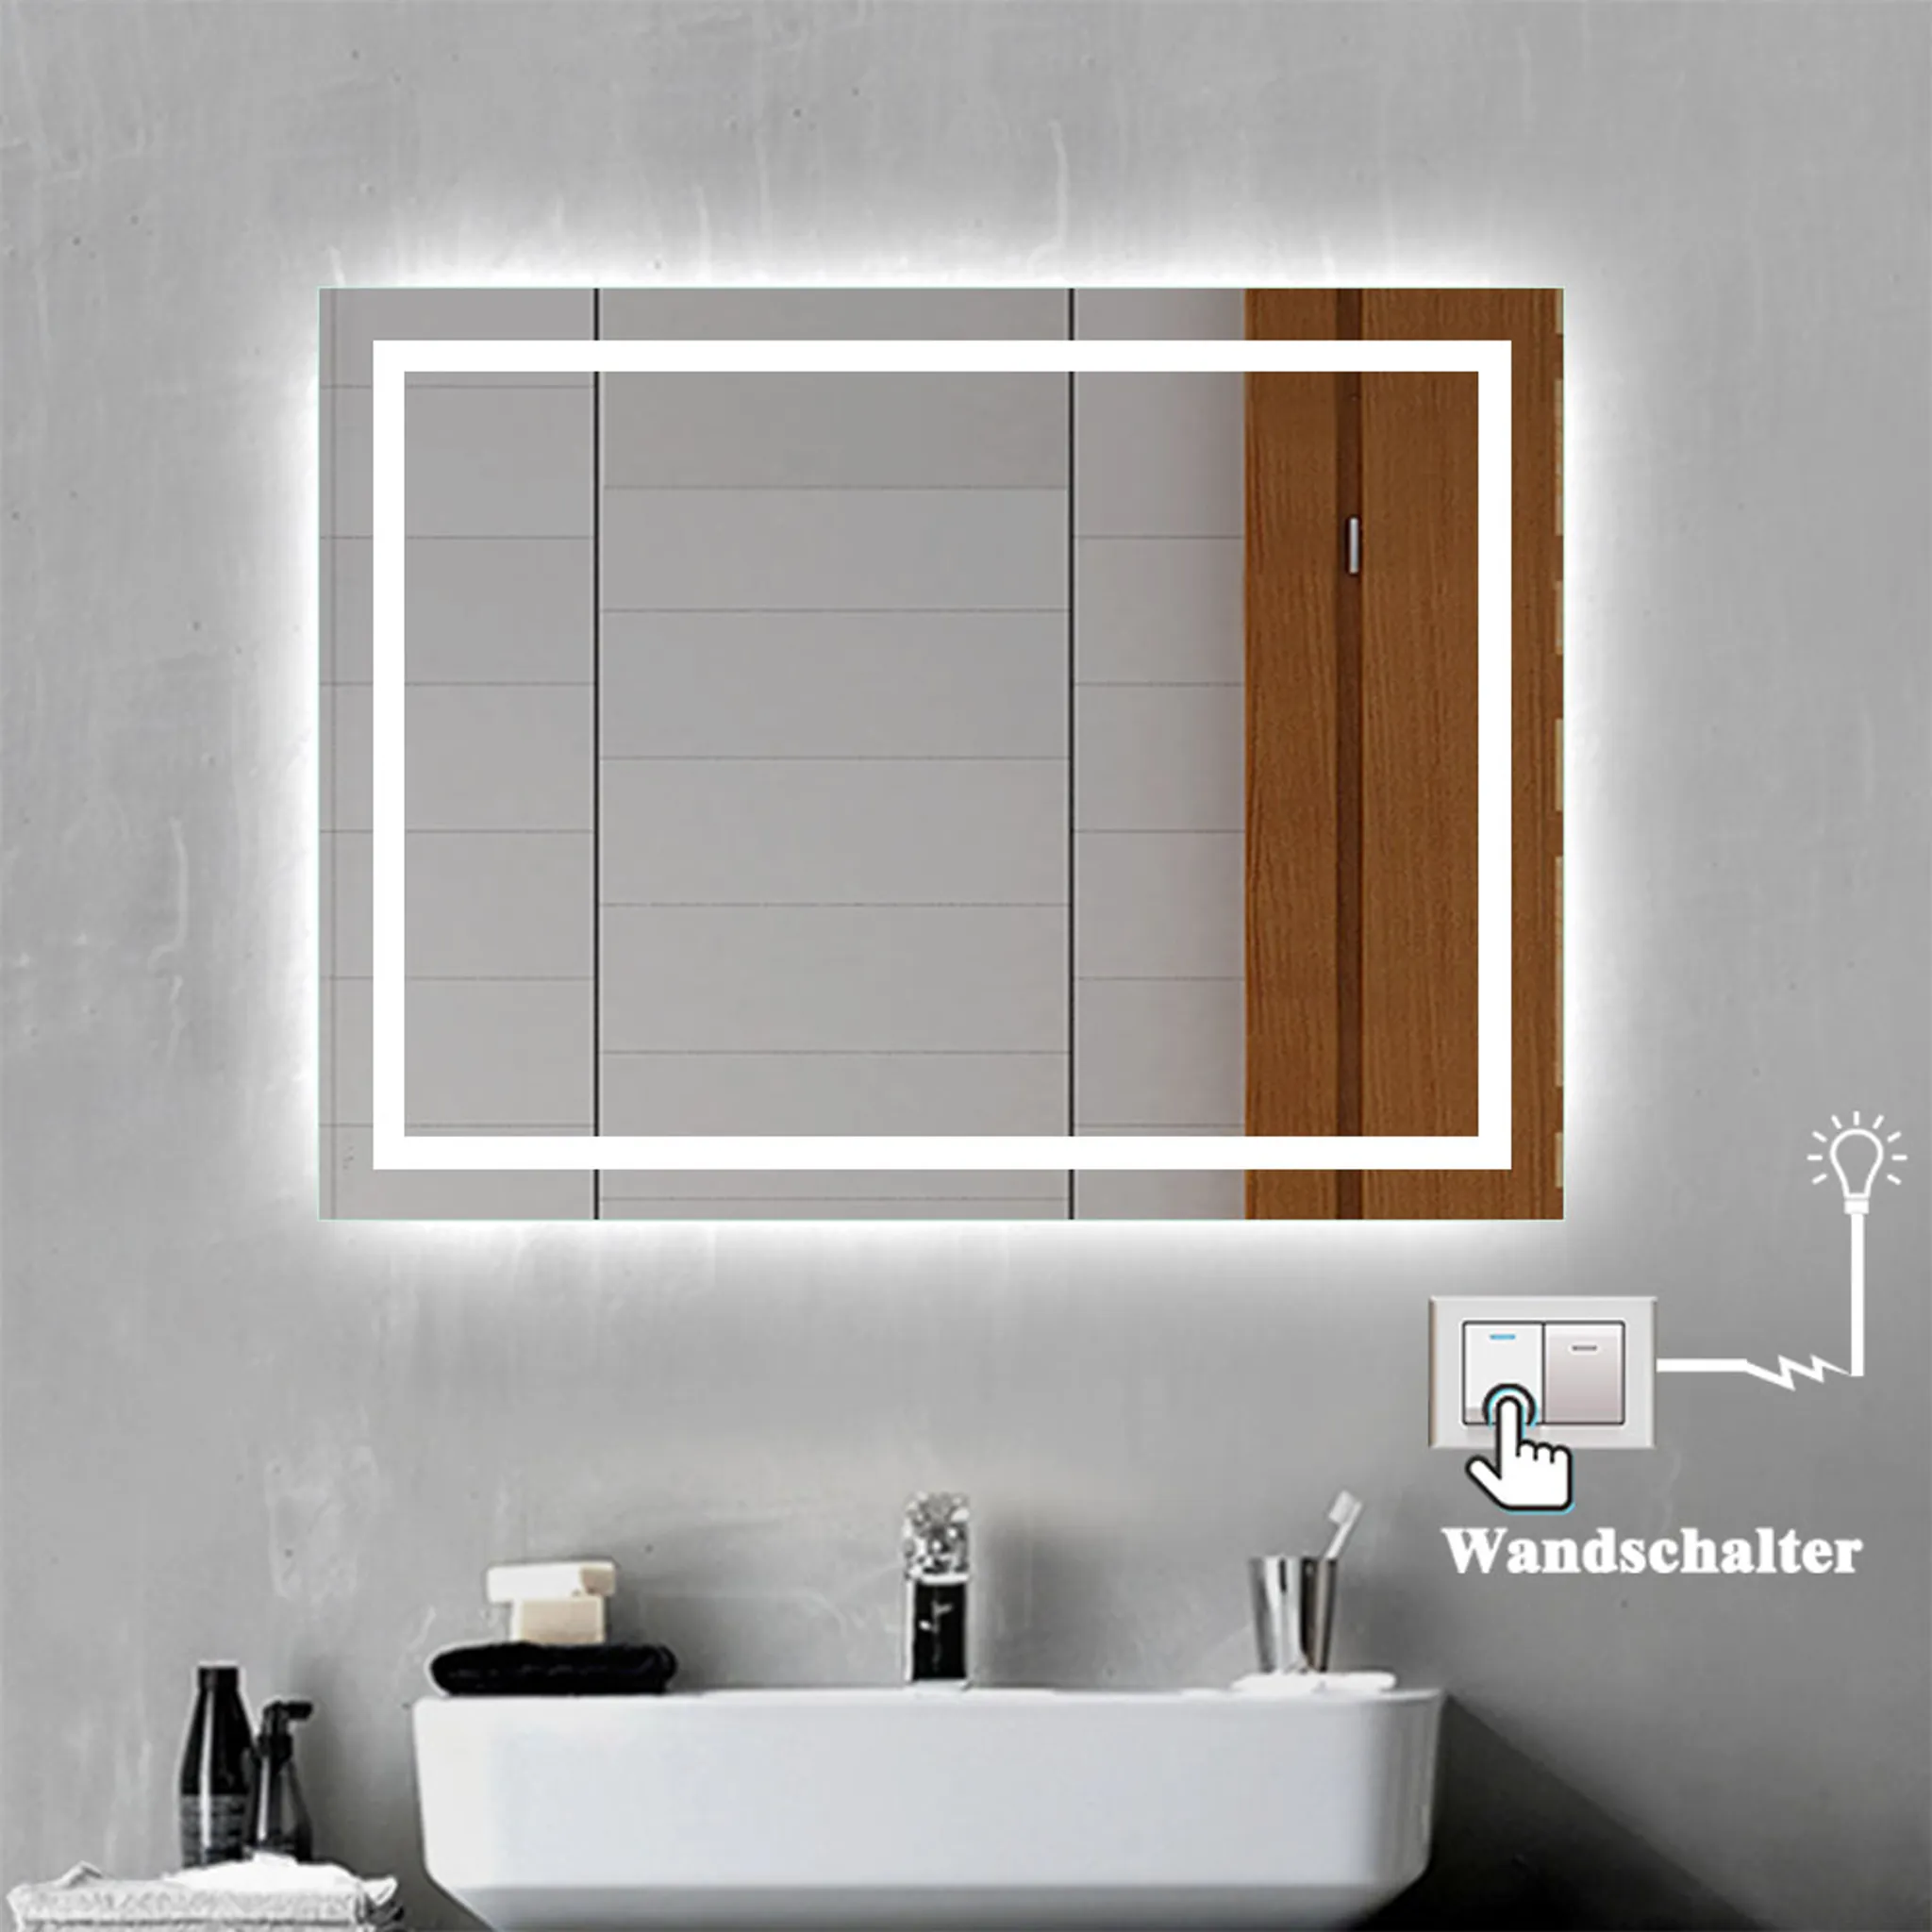 SONNI Badspiegel Lichtspiegel LED Spiegel Wandspiegel mit Sensor-Schalter  100 x 60cm kaltweiß IP44 energiesparend